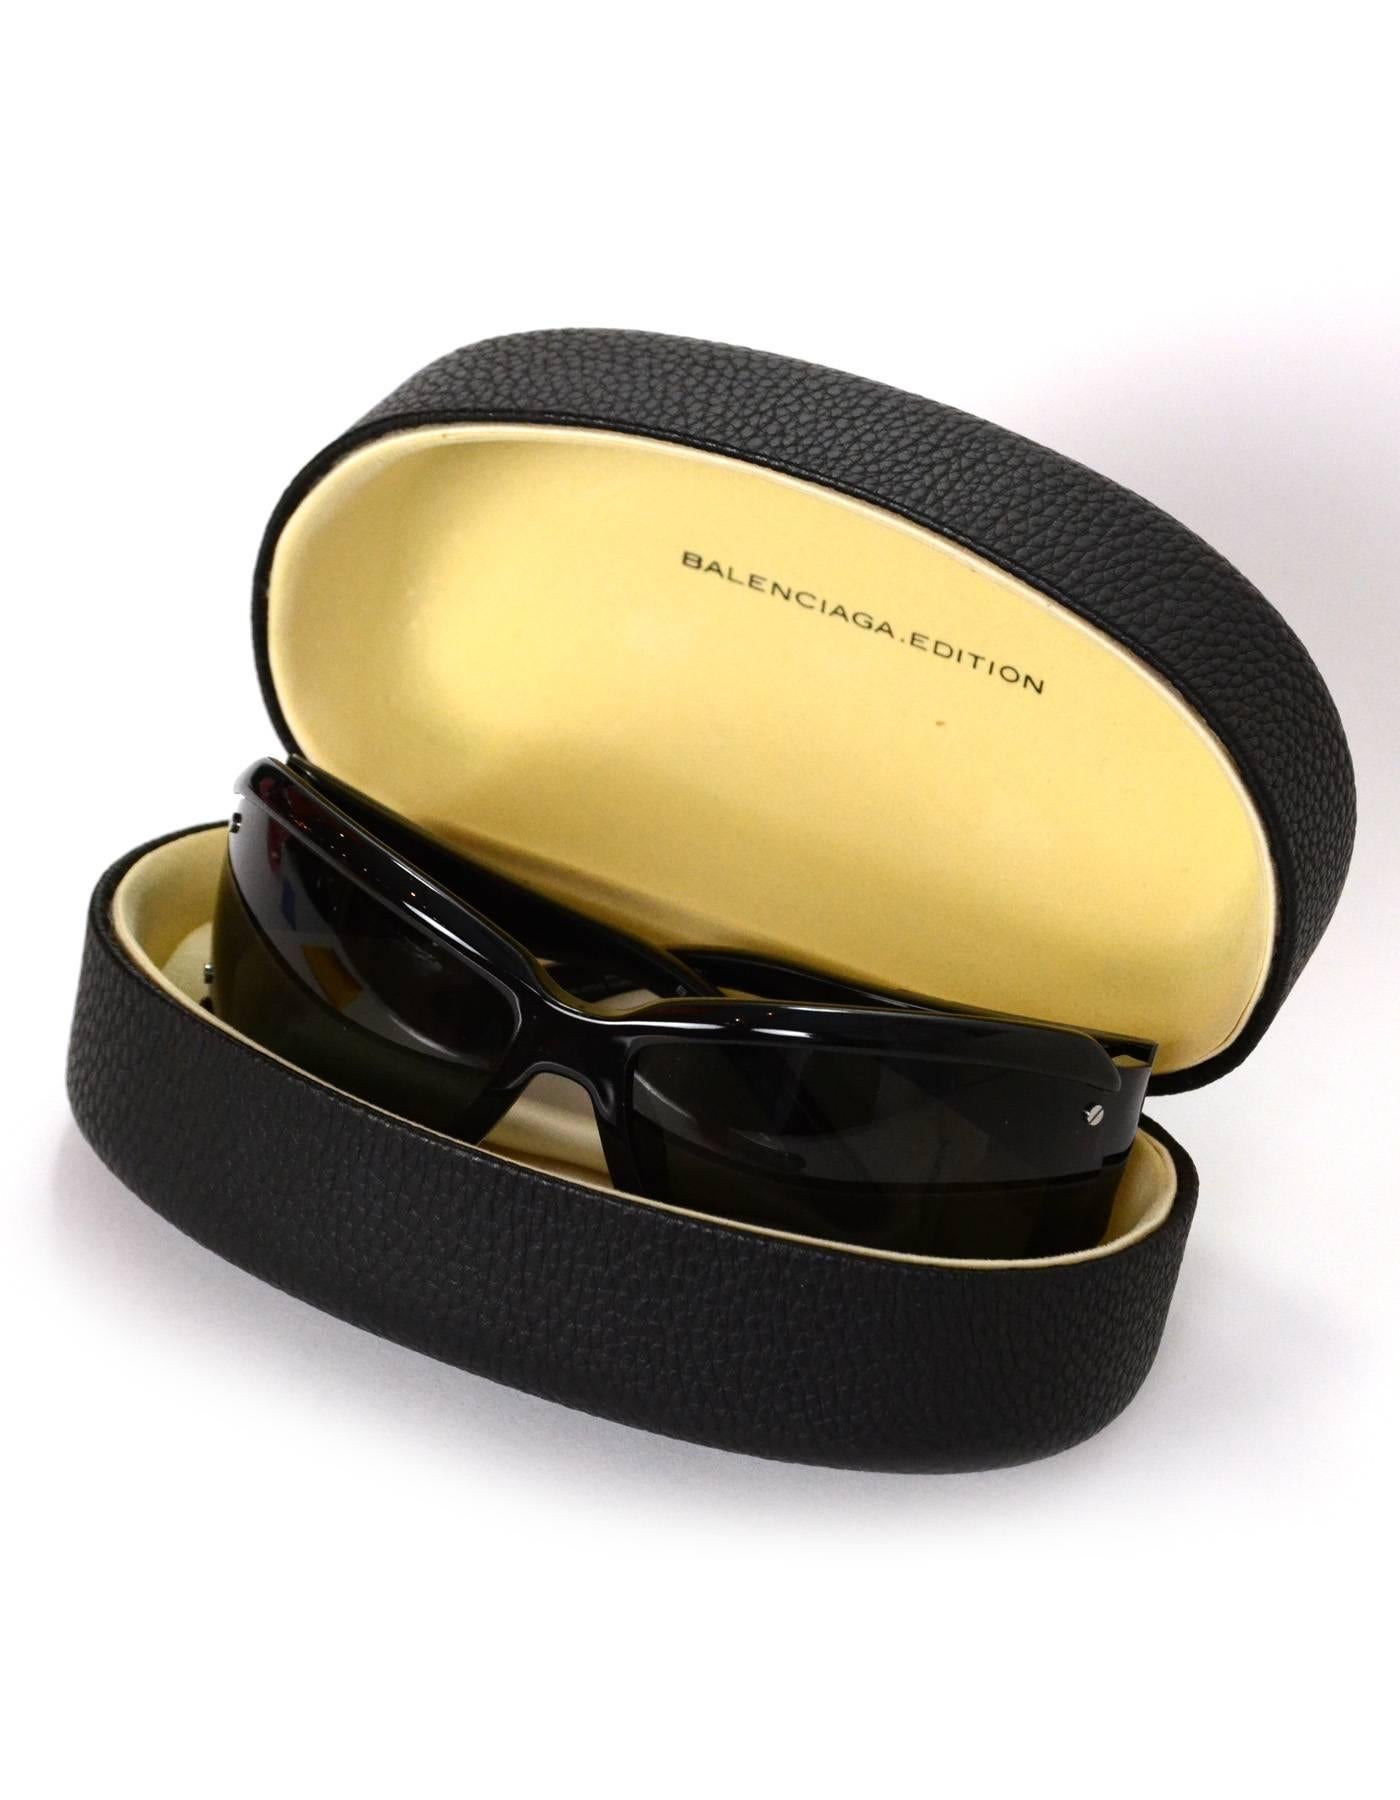 Balenciaga Black and Silvertone Sunglasses with Case 2